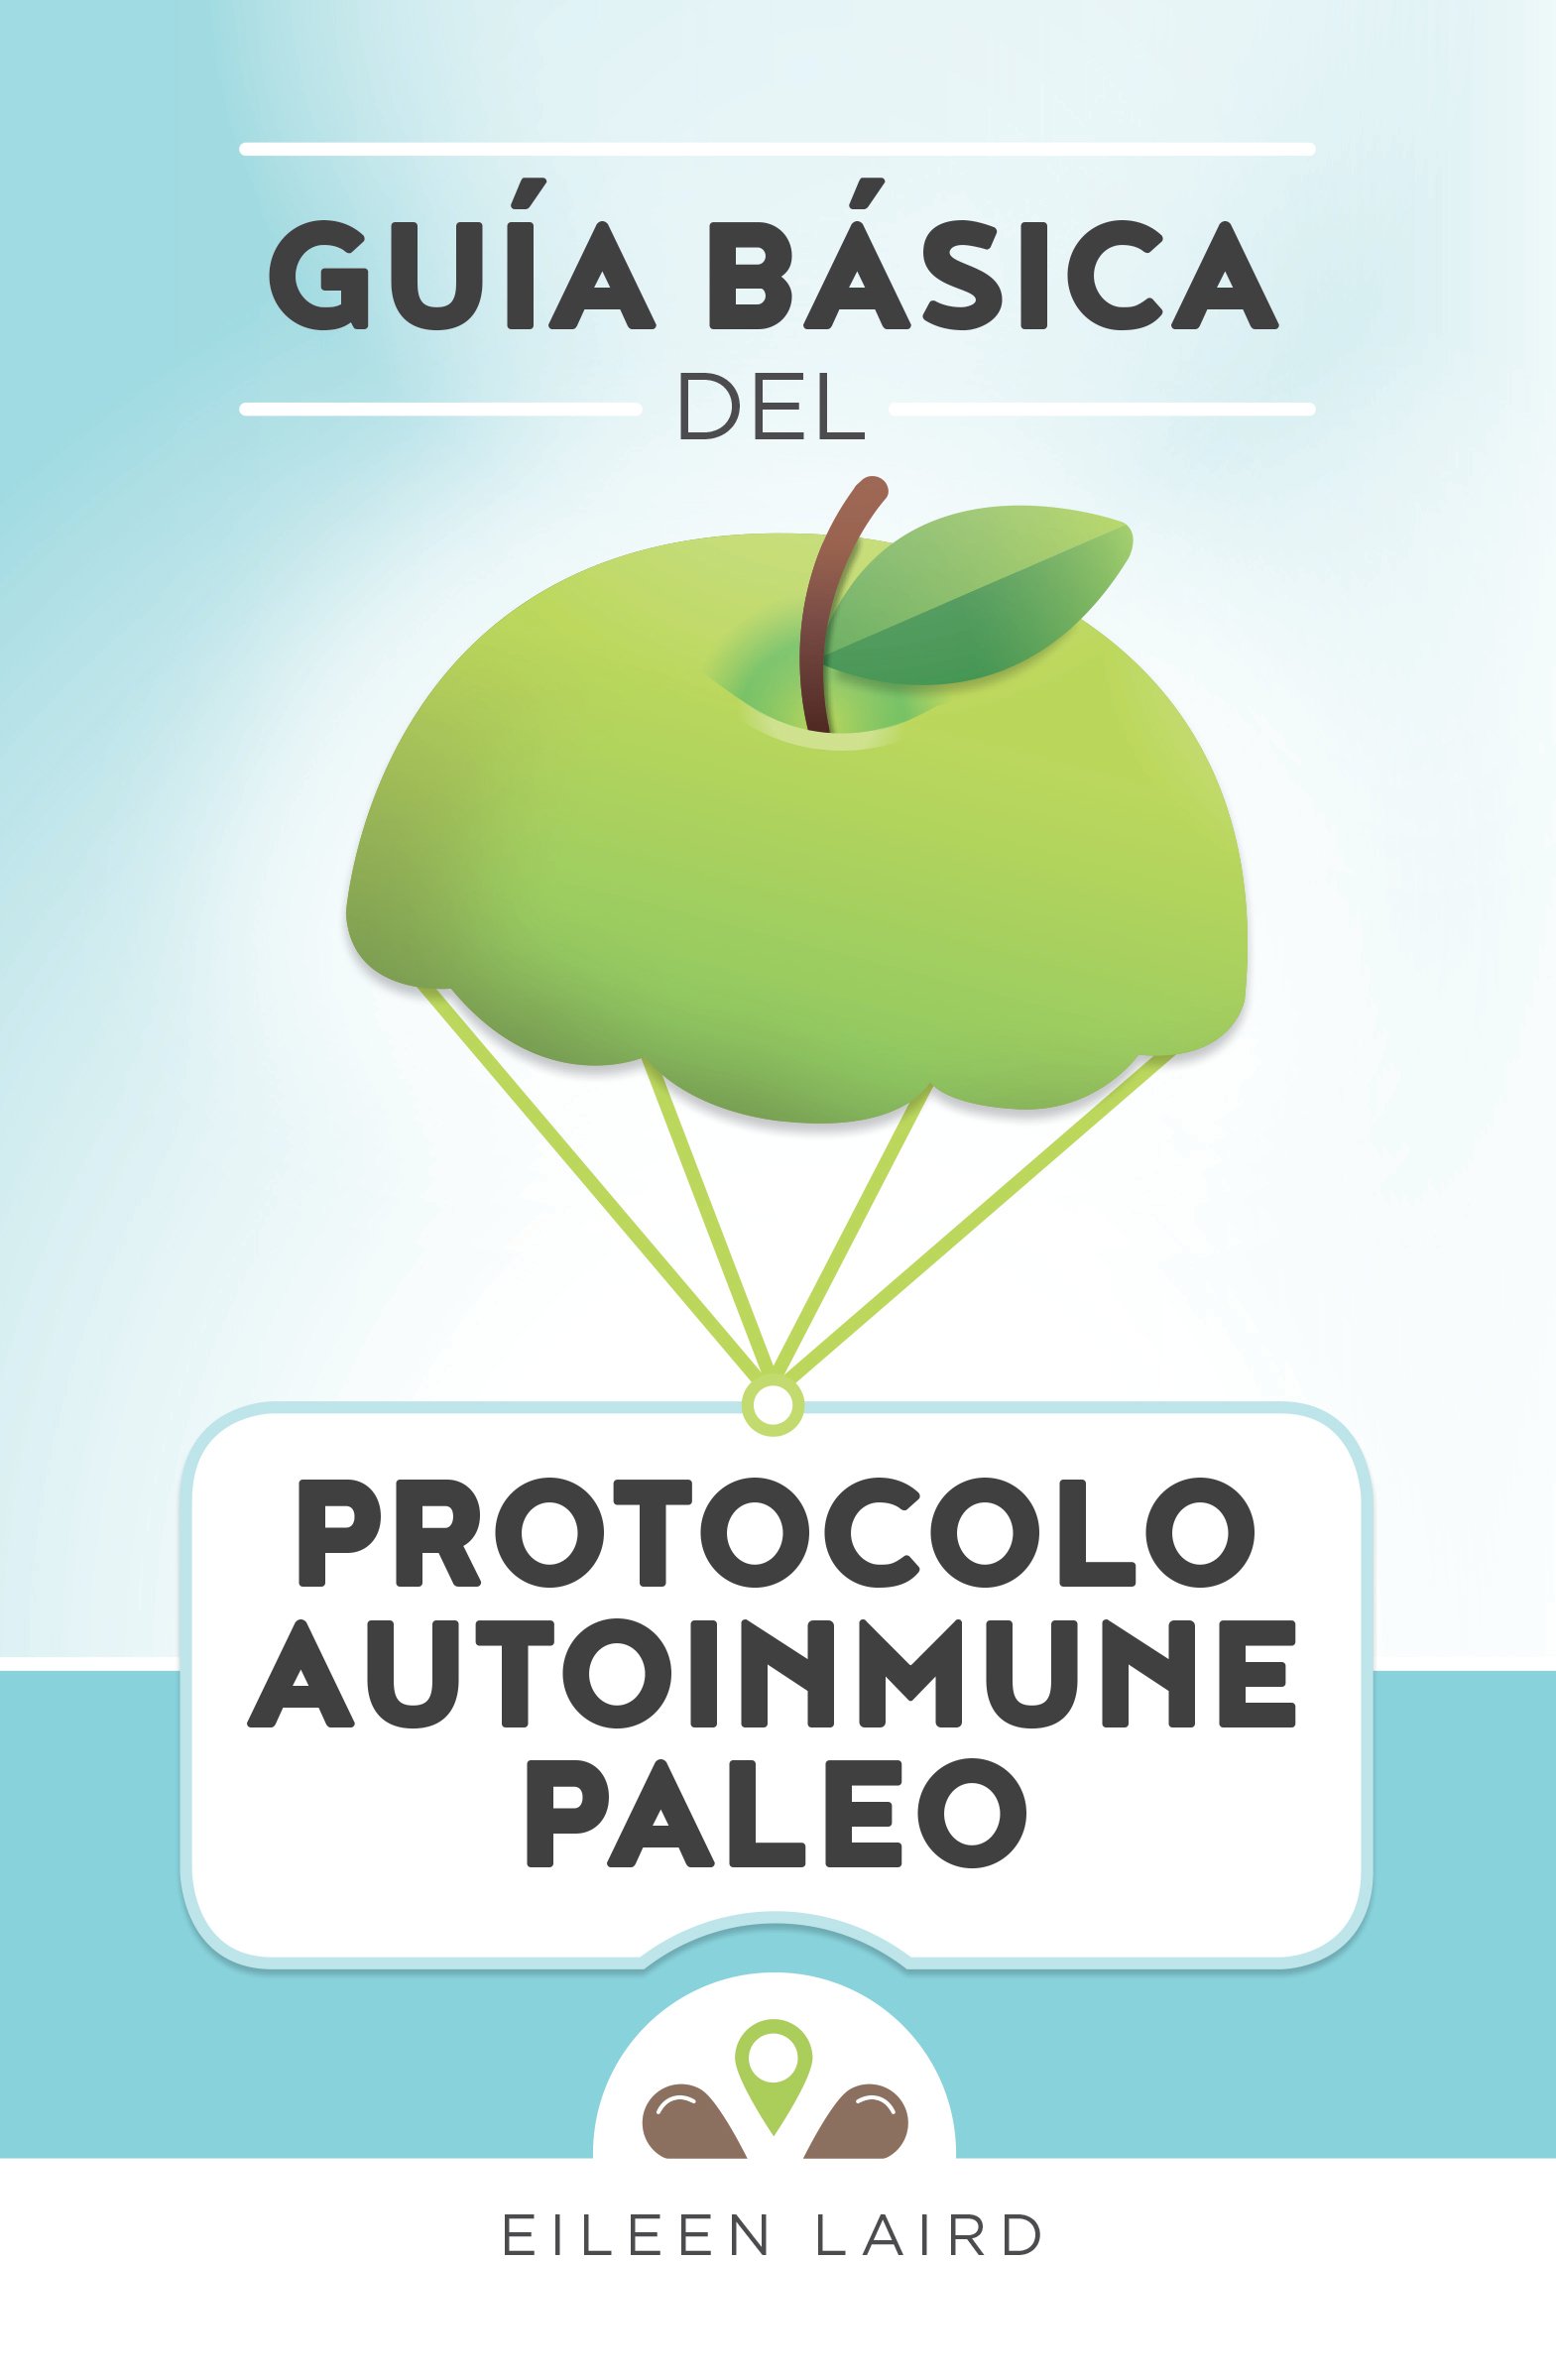 ¡La Guía básica del protocolo autoinmune paleo está disponible en español!